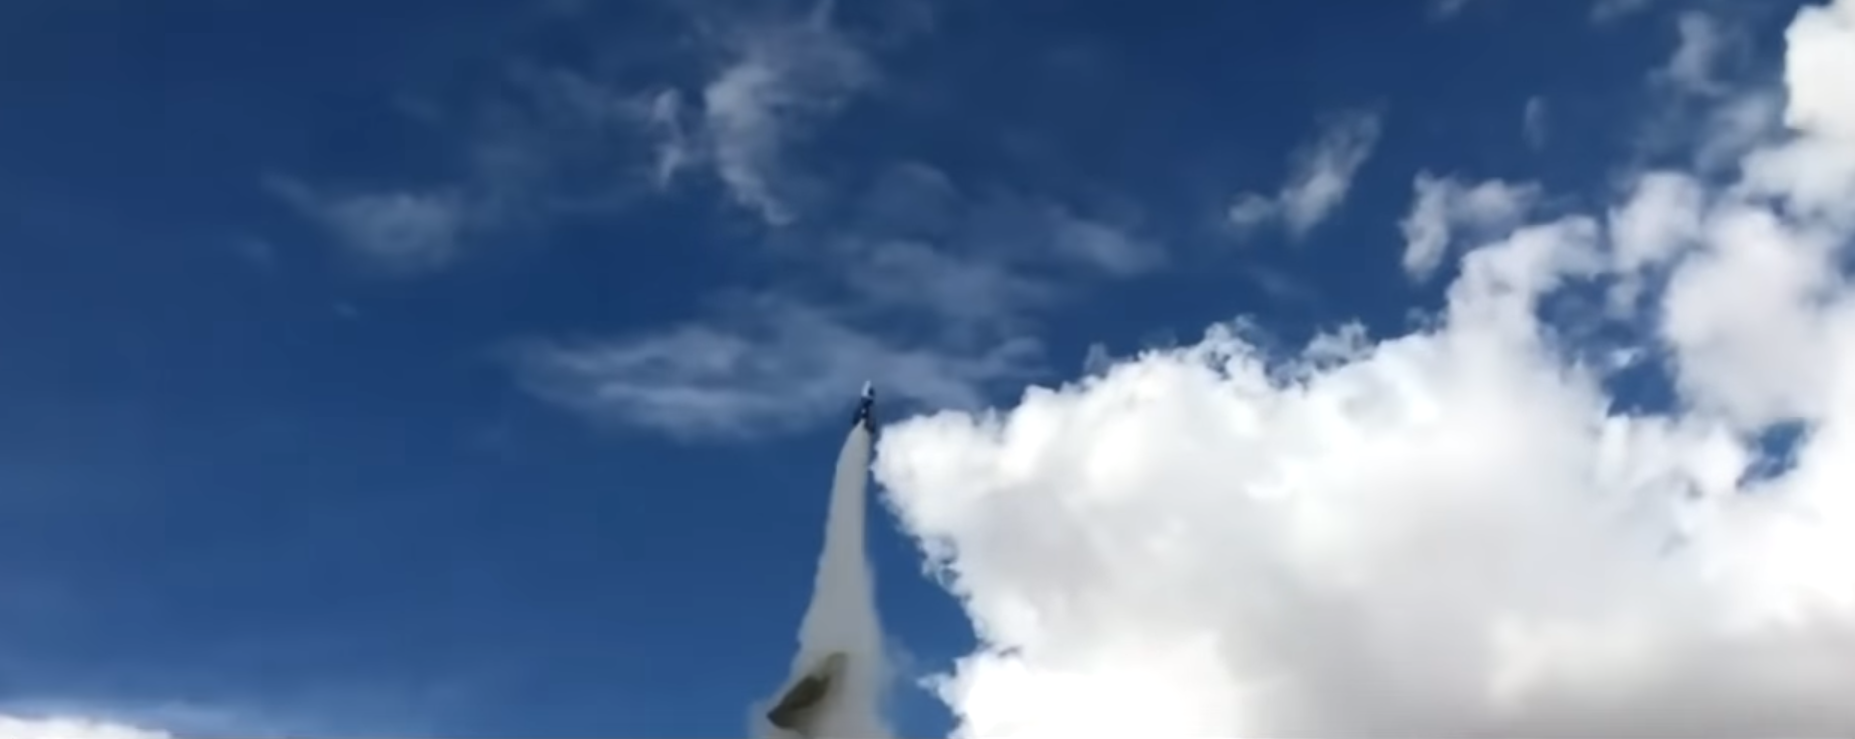 Le parachute se détache de la fusée quelques secondes après le décollage.